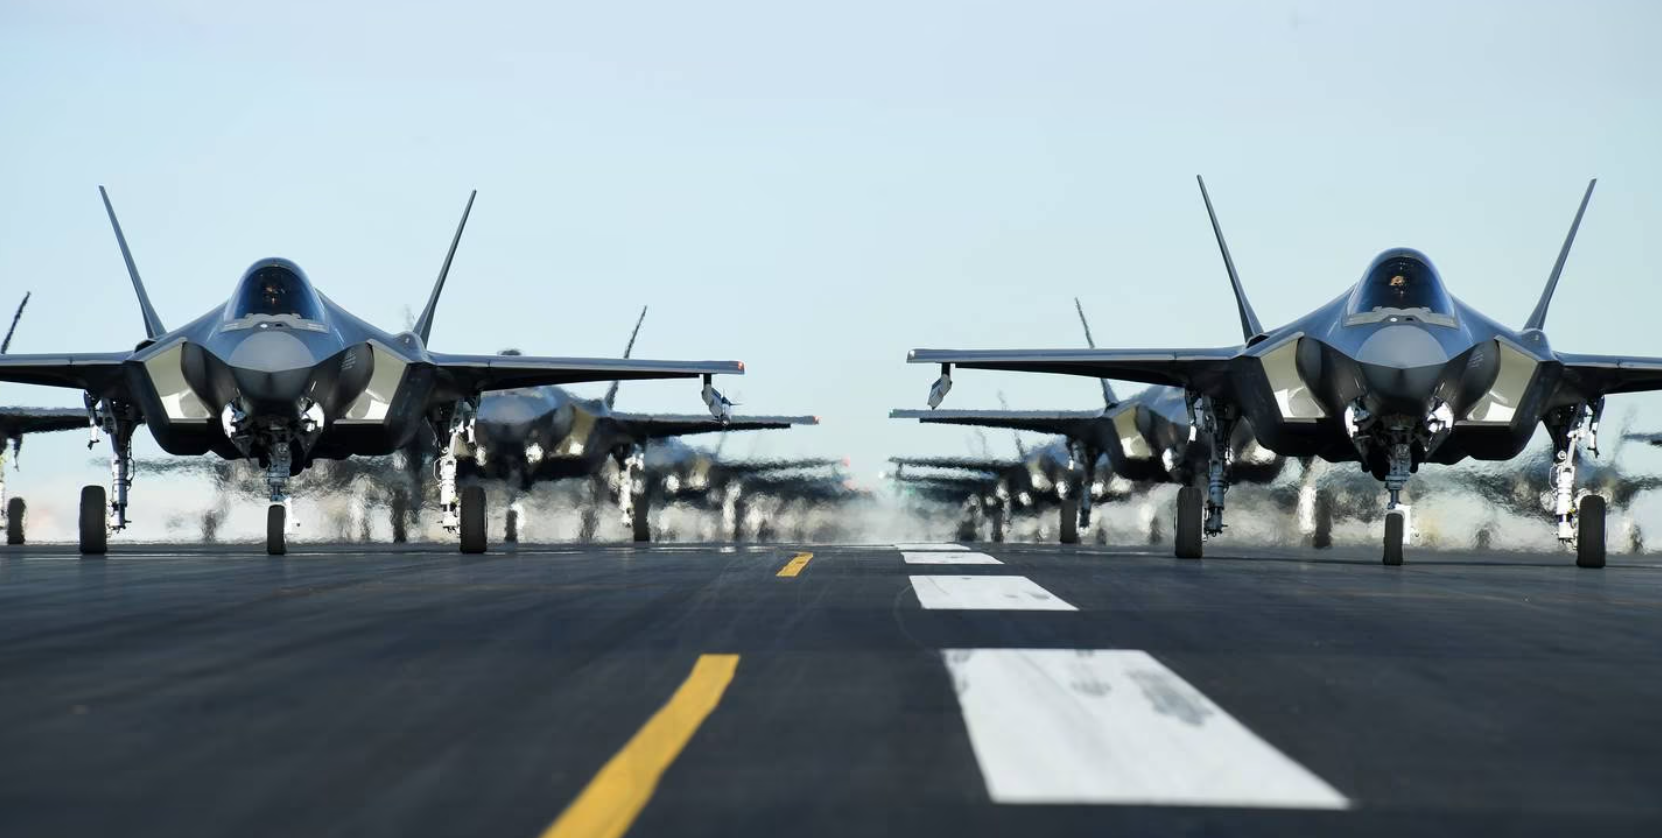 BAE riceve 491 milioni di dollari da Lockheed Martin per produrre sistemi di guerra elettronica per i caccia F-35